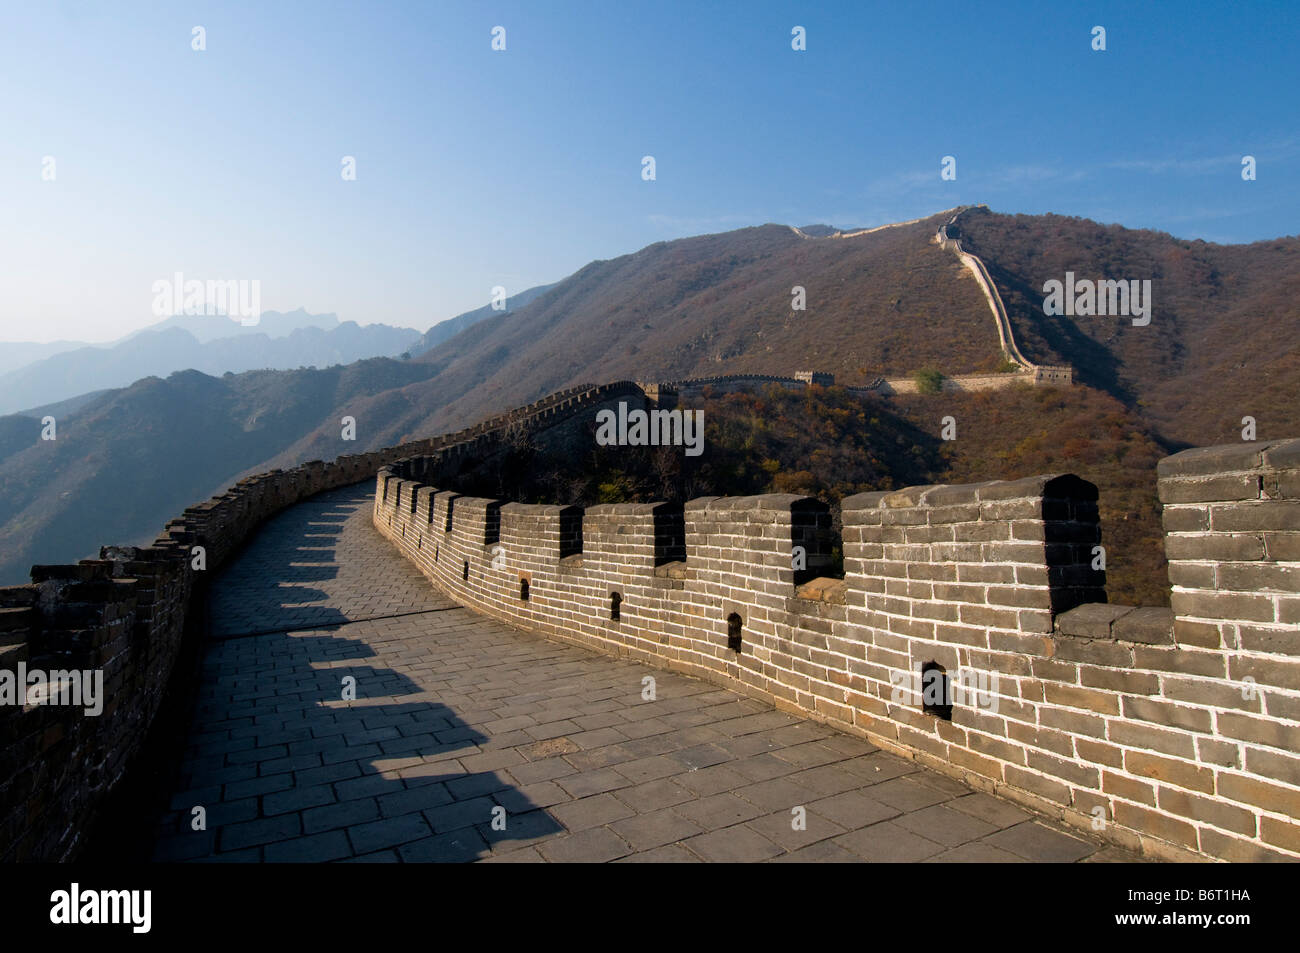 China great wall Mutianyu section Stock Photo